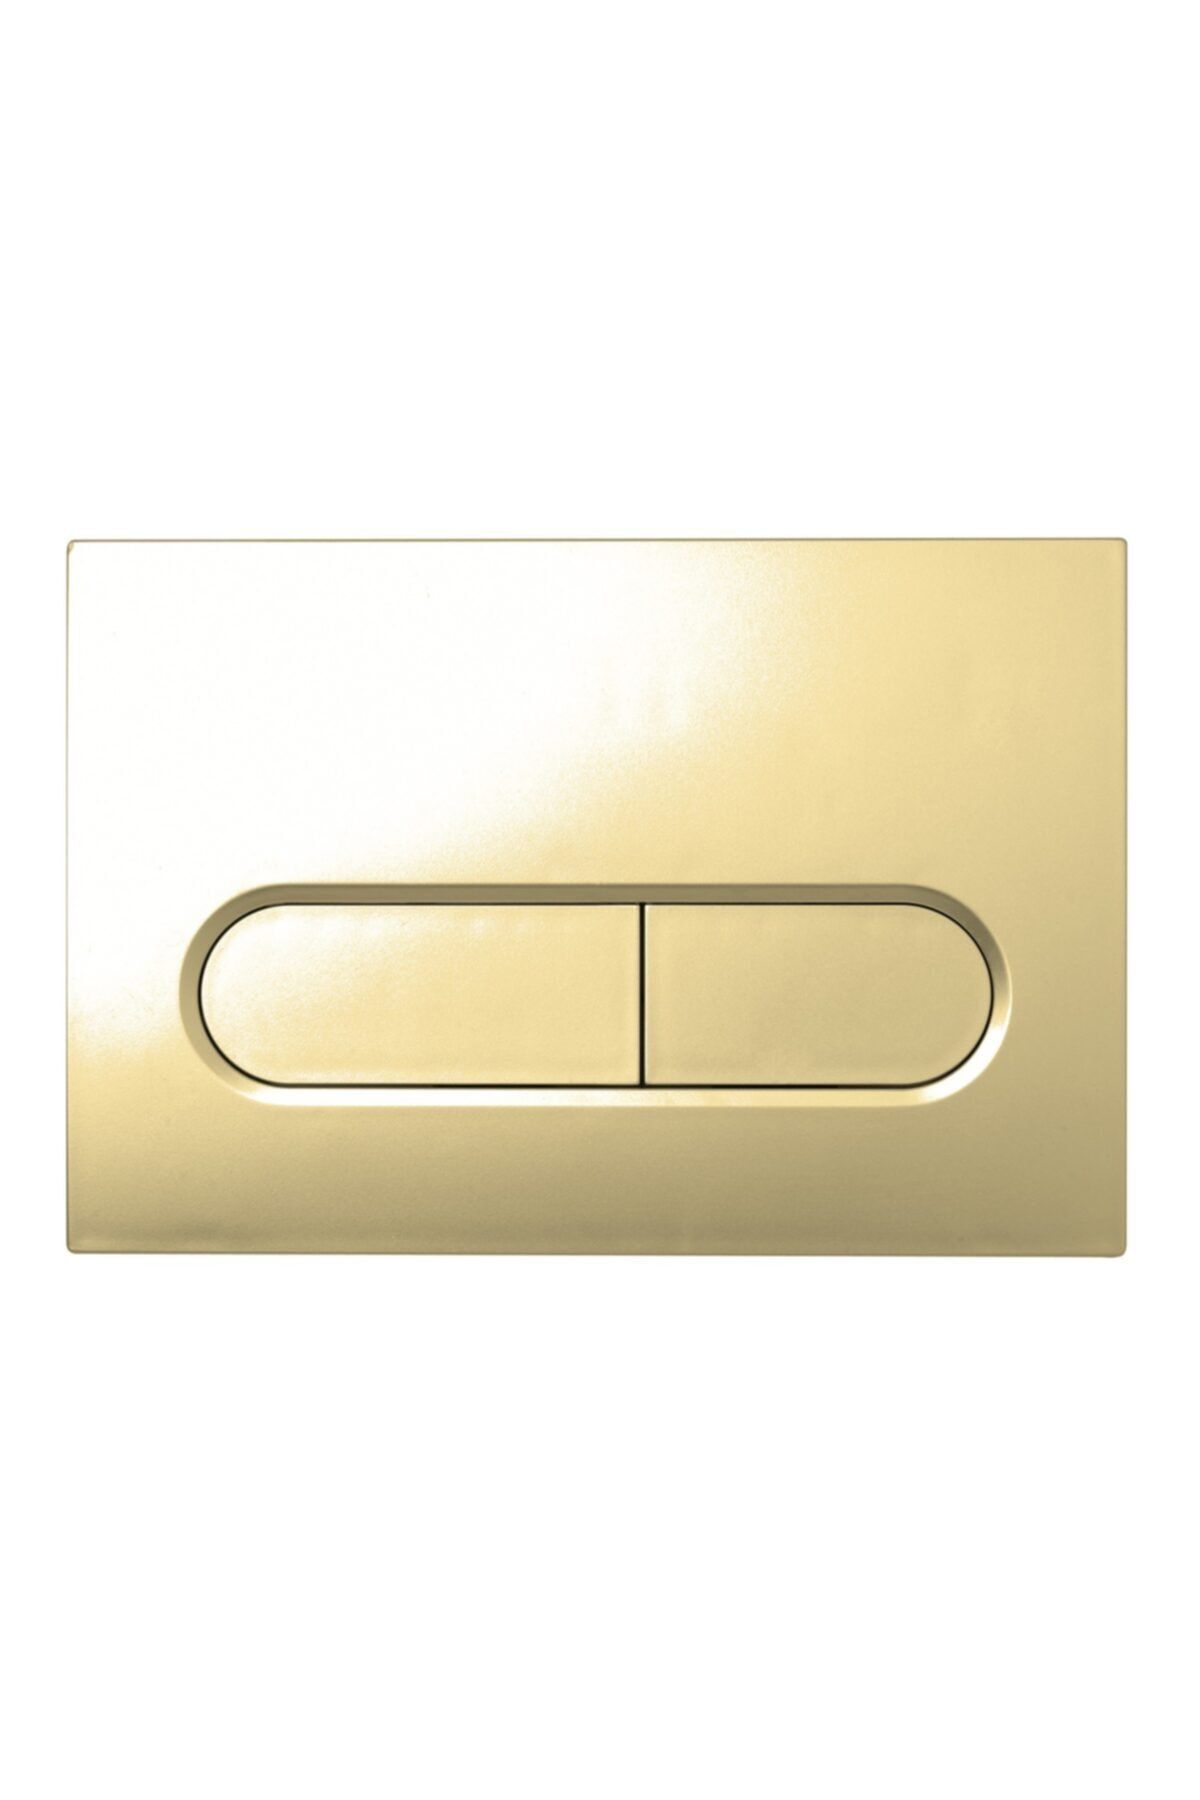 KALE Capsule - Gomme Rezervuar Panelı (ıntegra) Altın